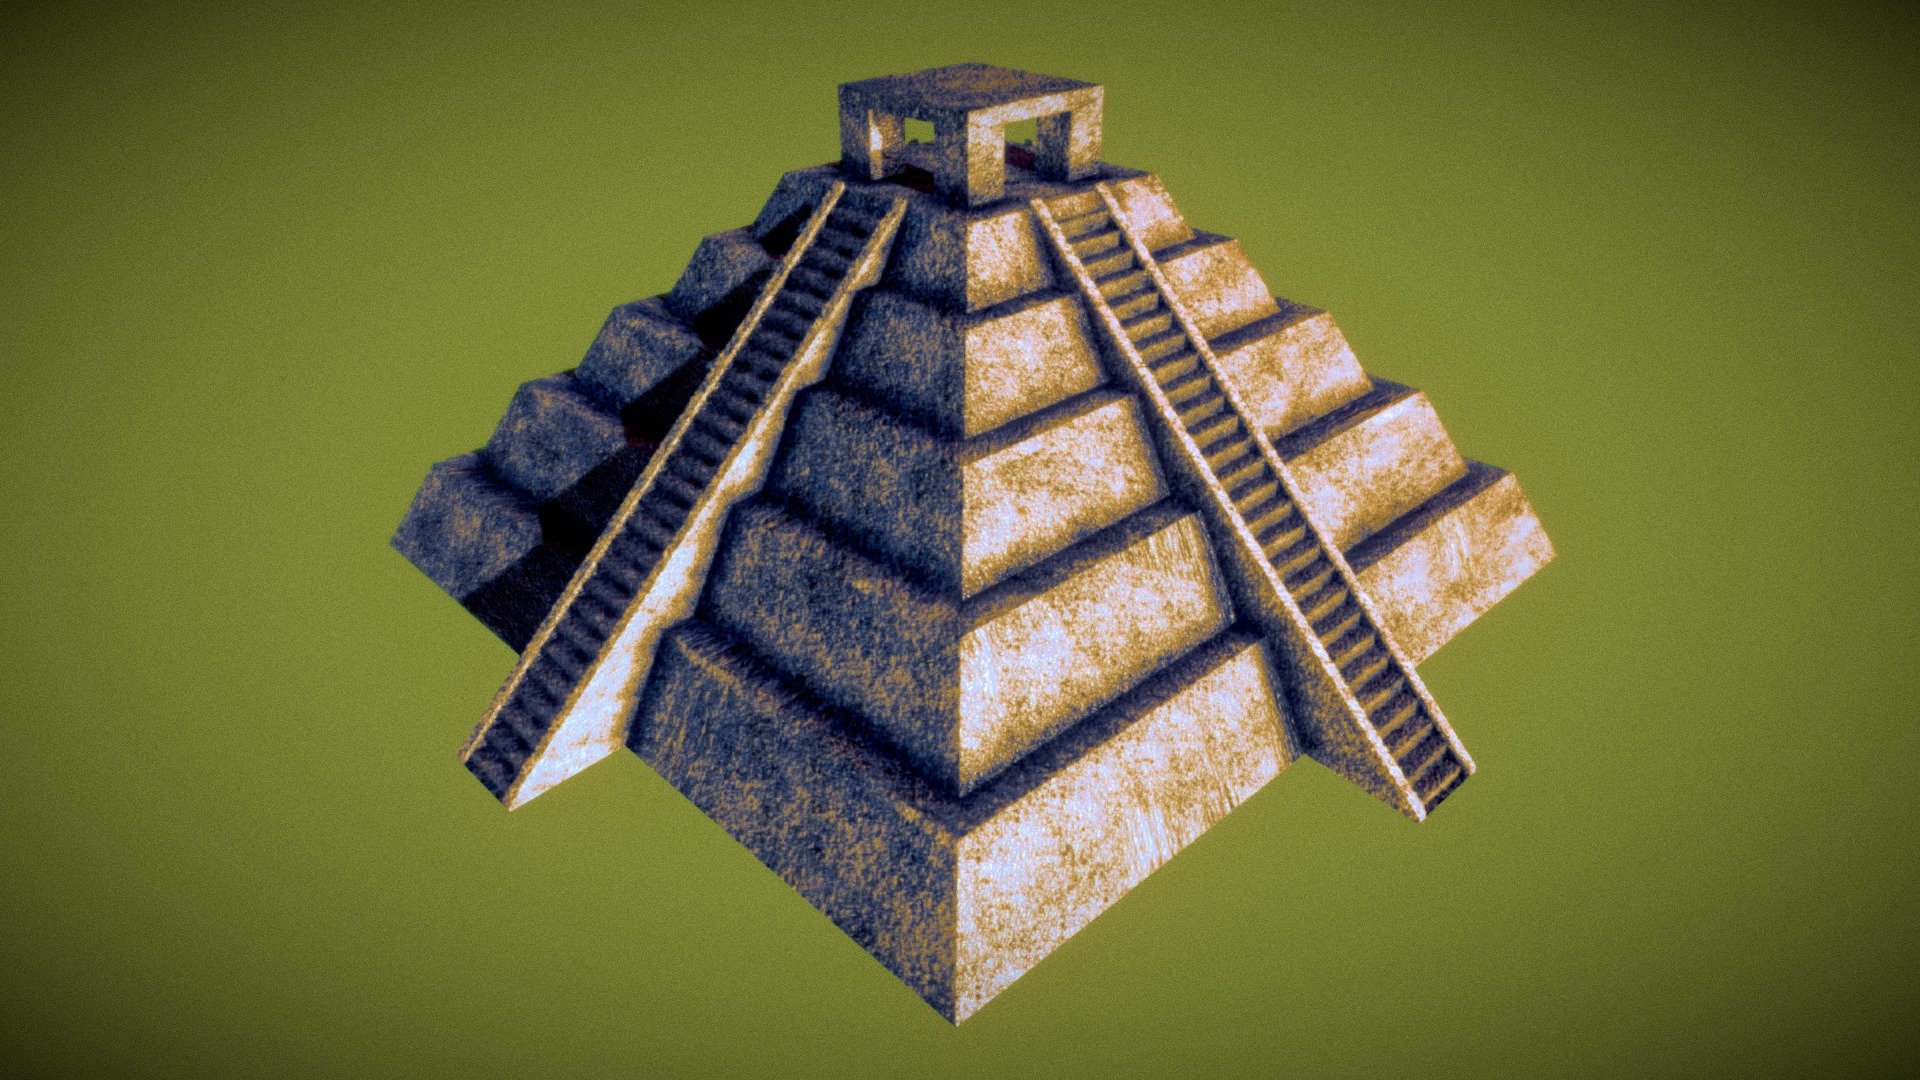 Aztec Pyramid Download Free 3d Model By Rhcreations 69b83db Sketchfab